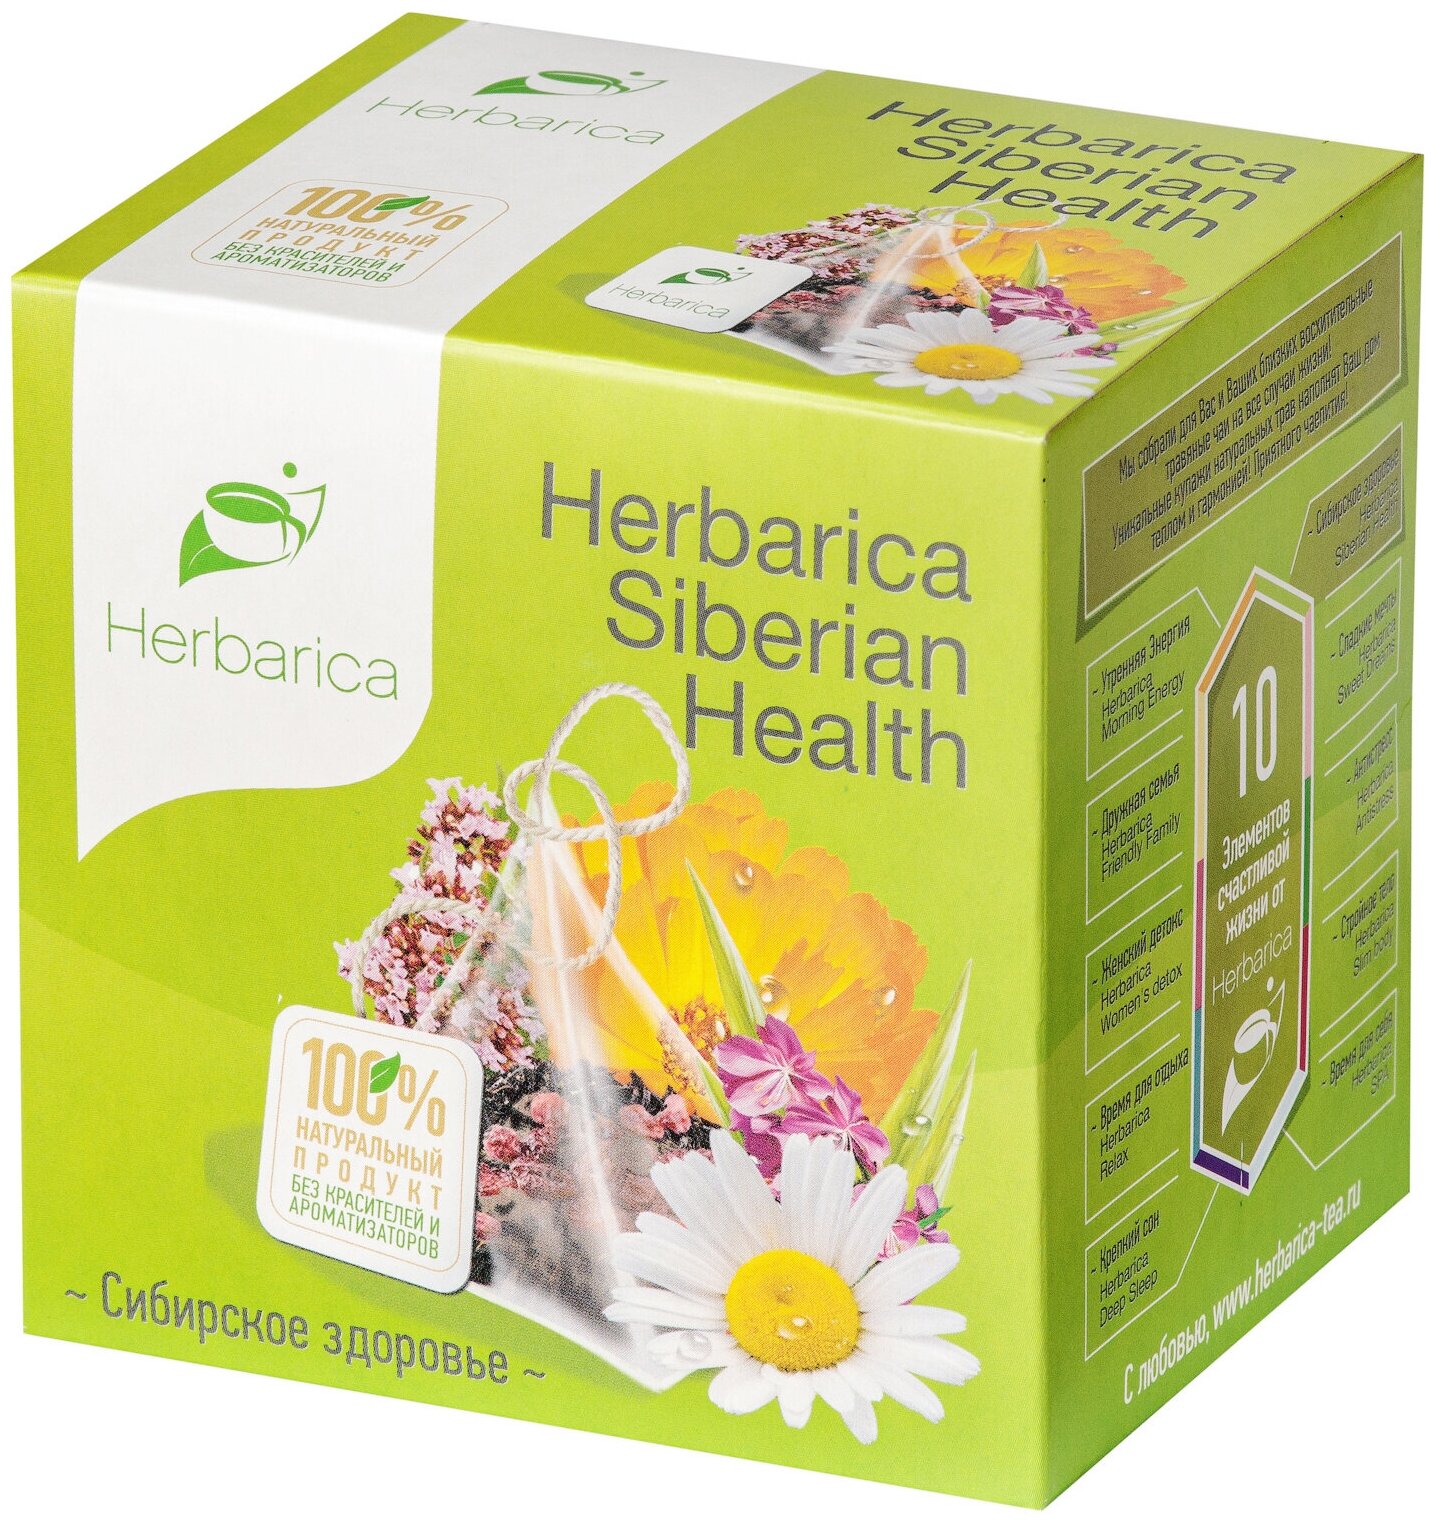 Herbarica Siberian Health Гербарика Сибирское здоровье 20 пирамидок Травяной чай иван-чай, лемонграсс, чабрец, ромашка, лепестки календулы - фотография № 7